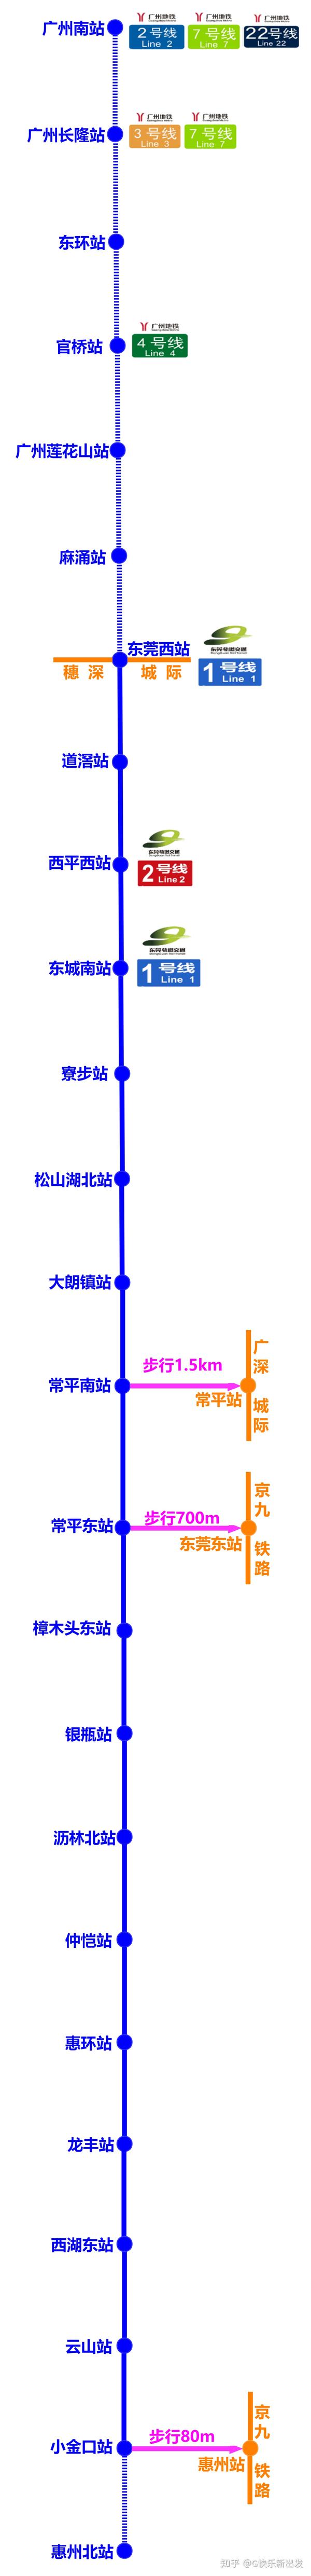 其中莞惠城际铁路于2009年5月8日动工建设;2016年3月30日,常平东站至